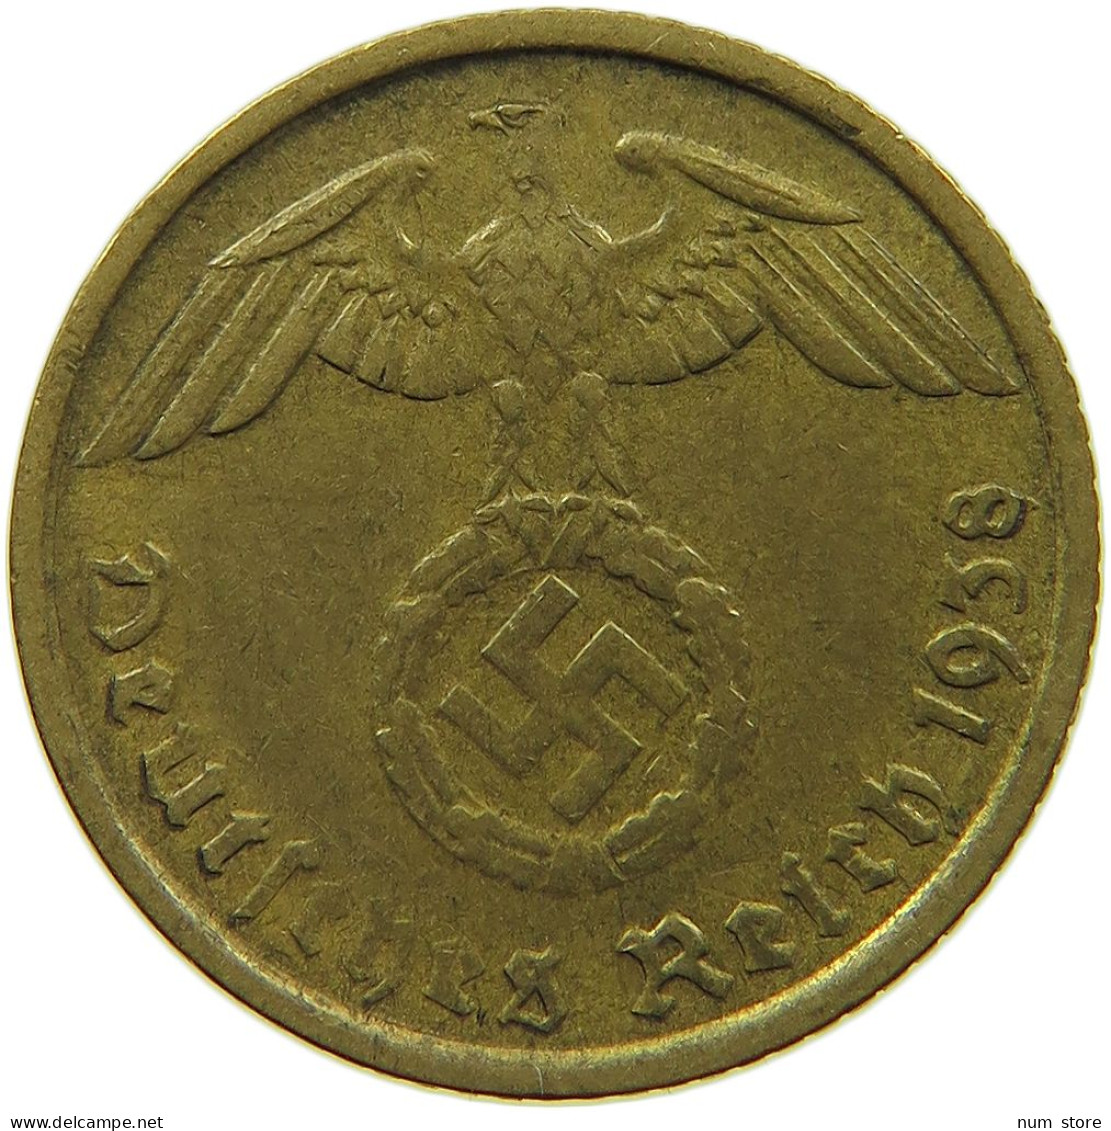 GERMANY 5 REICHSPFENNIG 1938 G #s091 0801 - 5 Reichspfennig